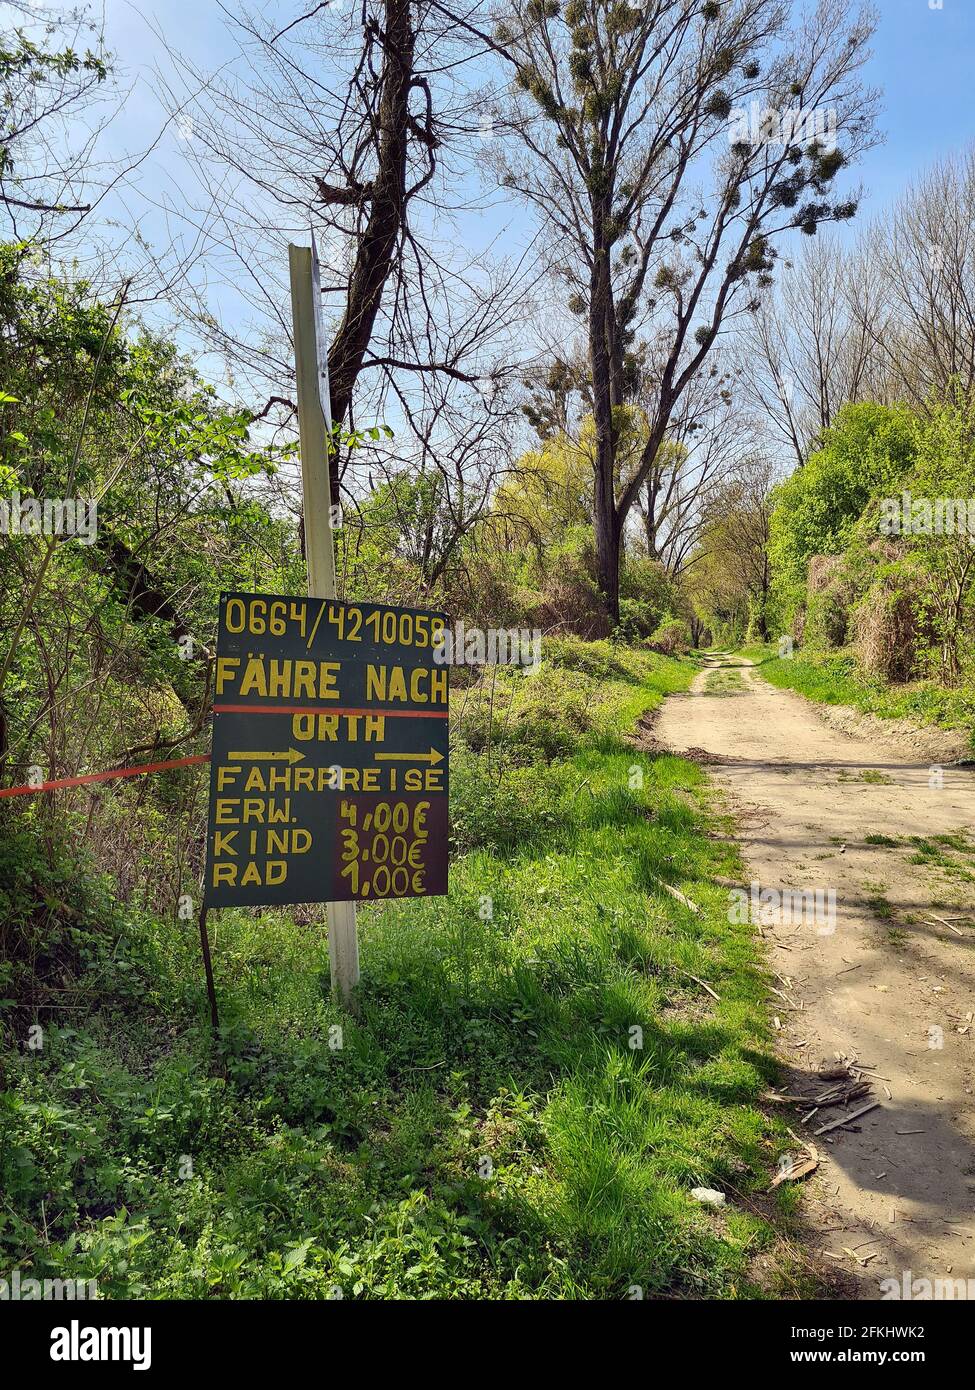 Haslau, Autriche - 24 avril 2021 : sentier de randonnée dans les zones humides et panneaux indiquant le ferry pour passagers traversant le Danube jusqu'au village d'Orth an de Banque D'Images